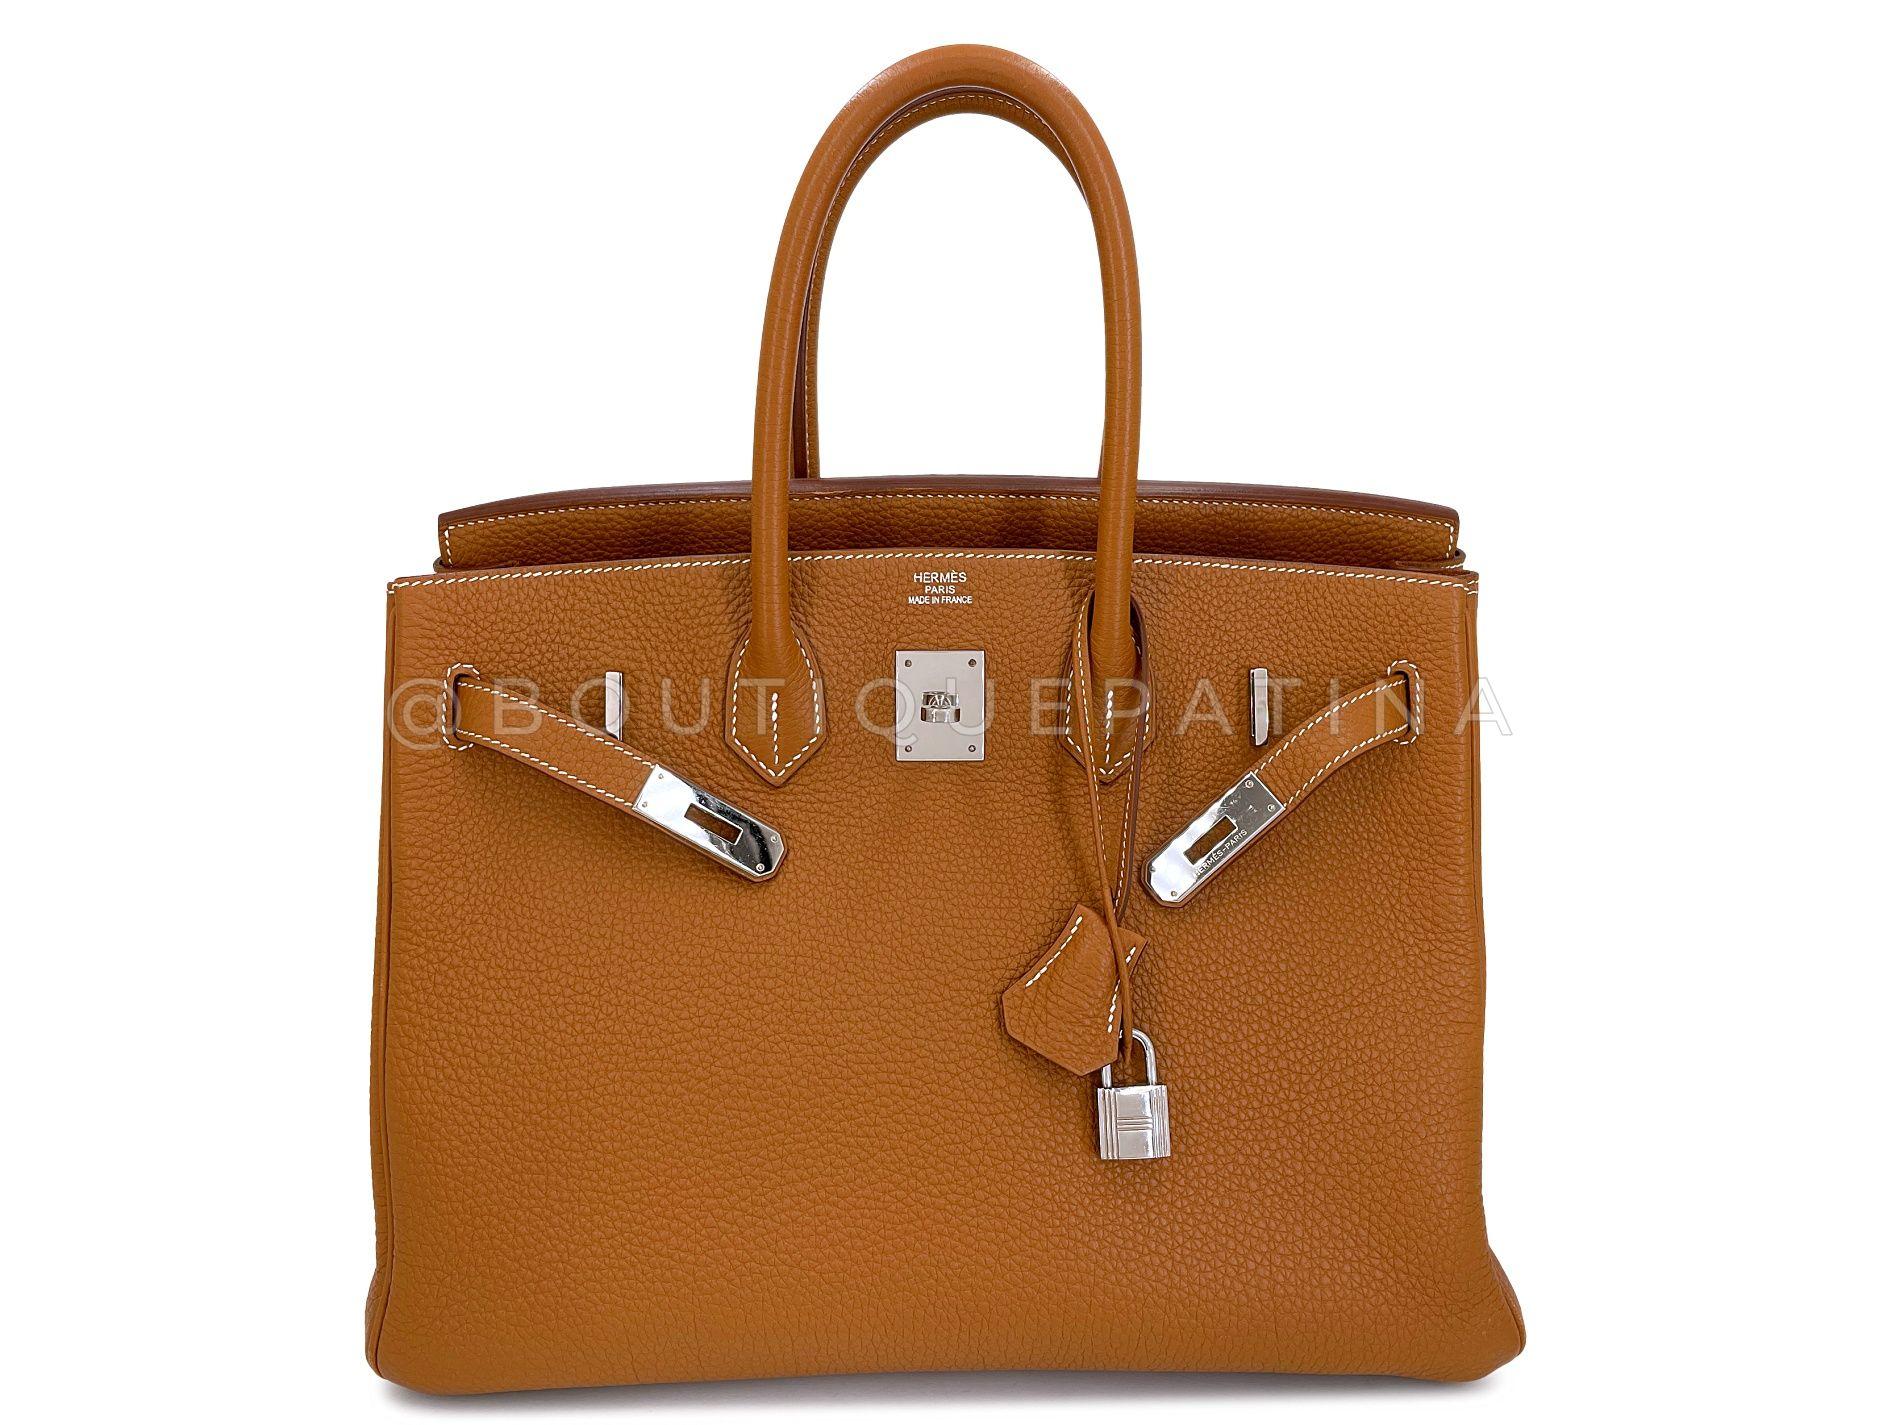 Hermès Gold Togo Birkin Tote Bag 35cm PHW Camel Brown 68060 For Sale 6